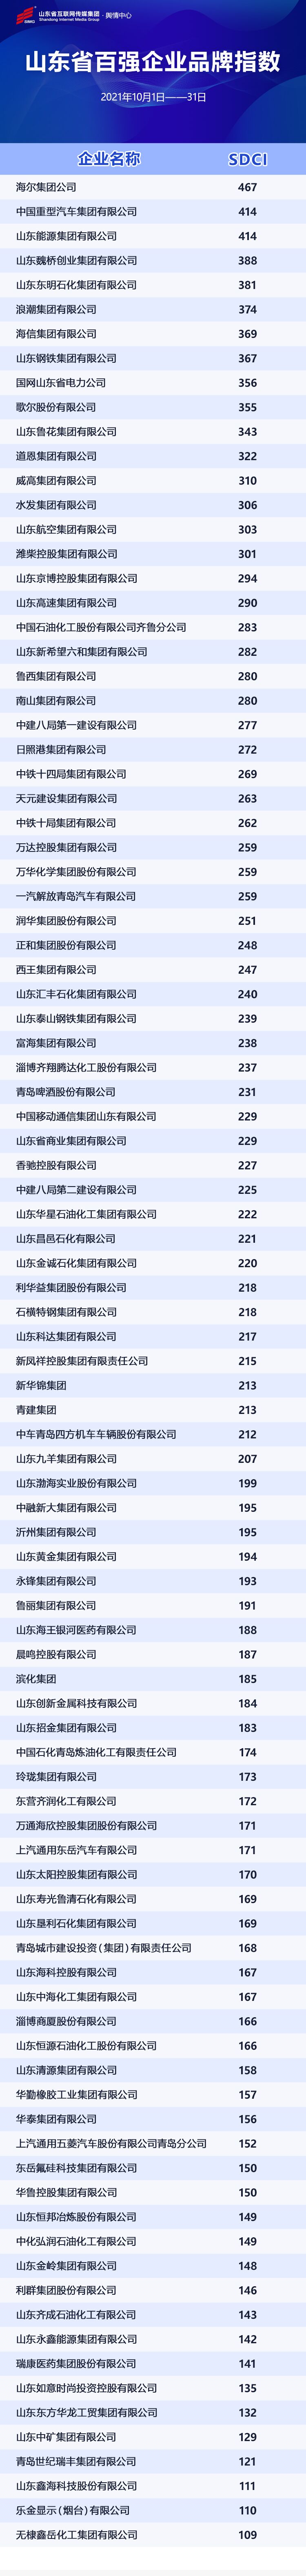 山东省百强企业9月份品牌指数发布 道恩集团跃升10个位次